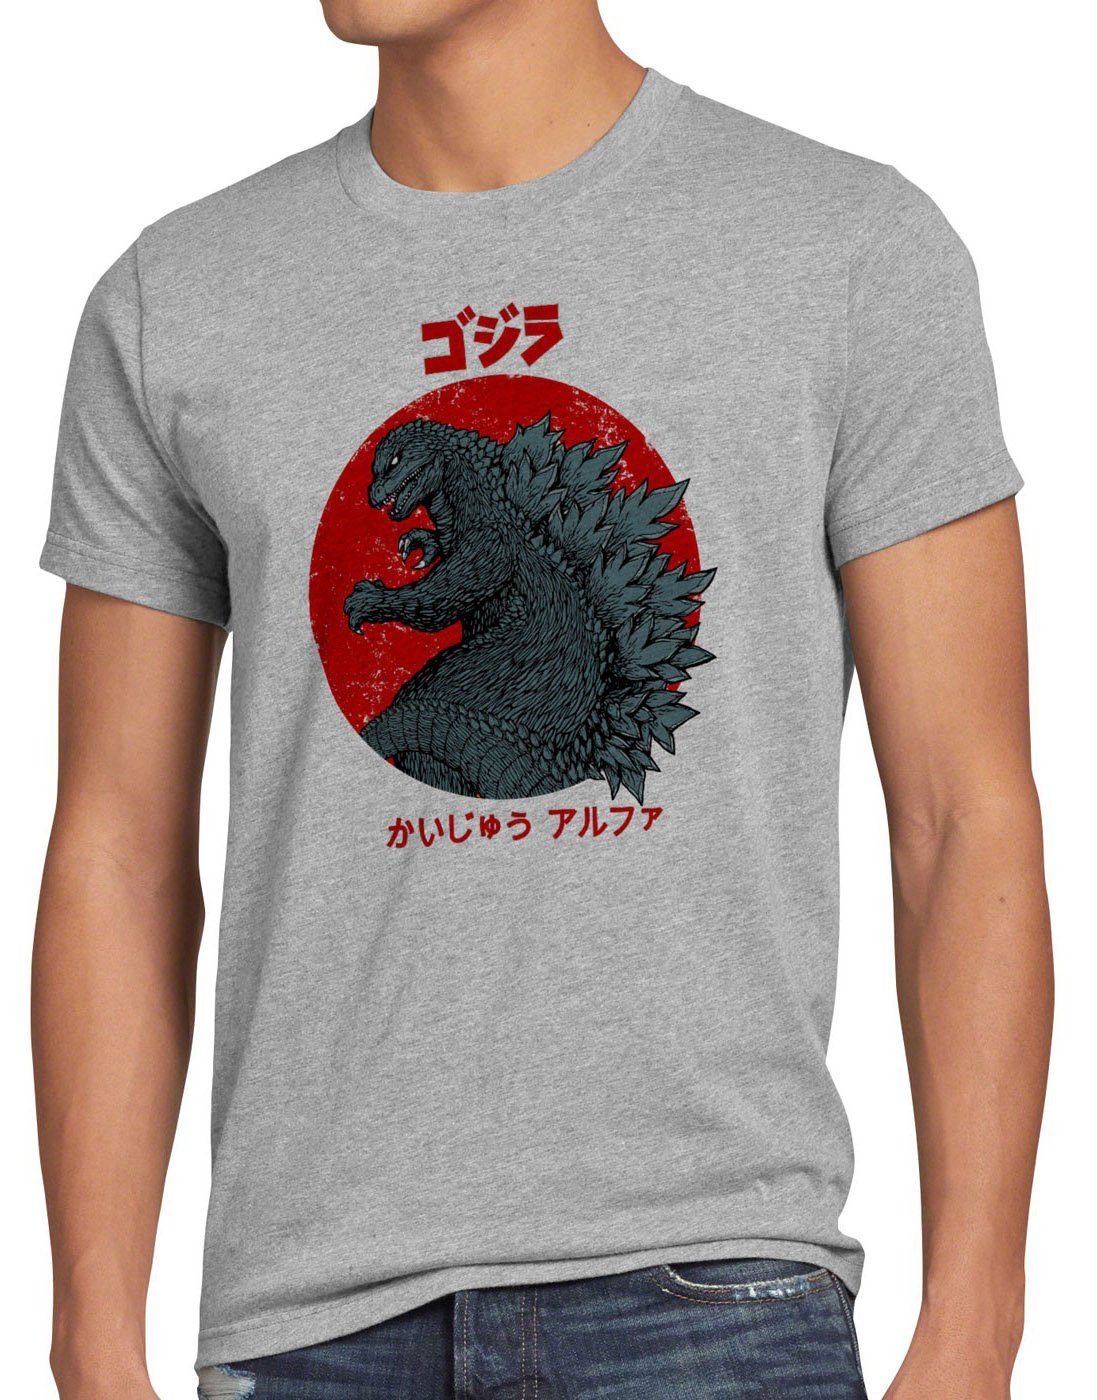 style3 Print-Shirt Herren T-Shirt Gojira monster japan nippon kaiju kanji tokyo blu-ray film kino grau meliert